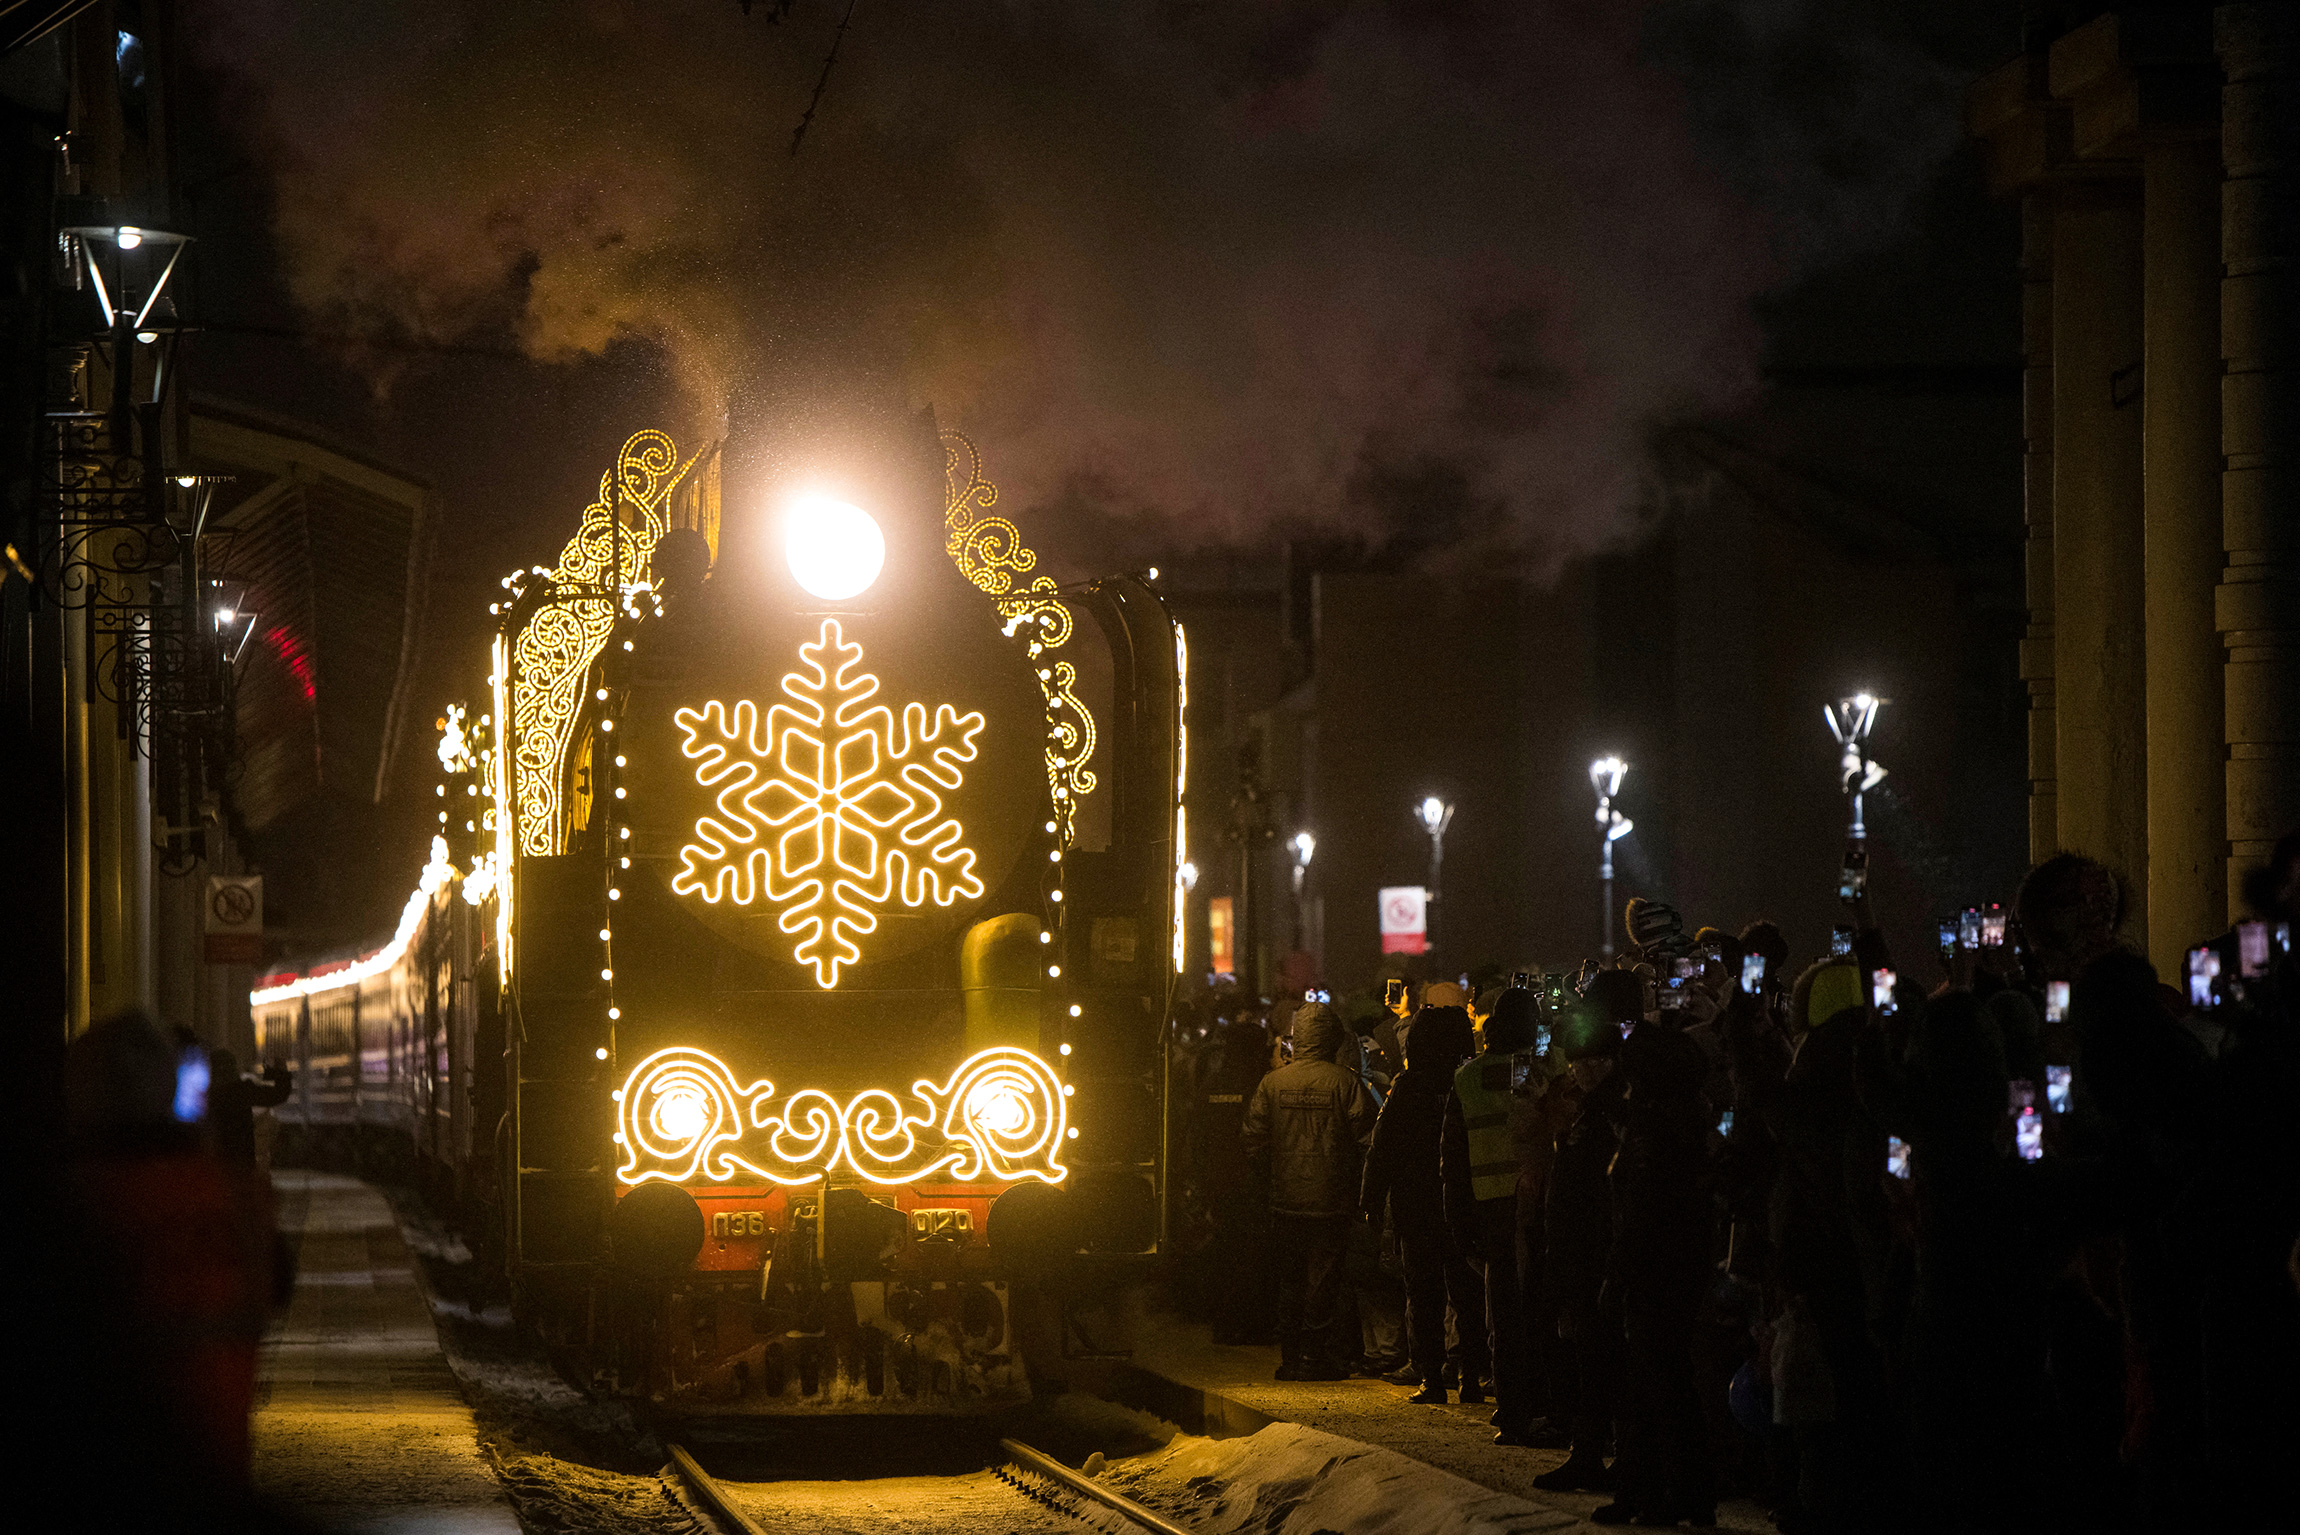 Люди встречают прибытие поезда Деда Мороза в Красноярске, Россия. Поезд стартовал из Великого Устюга еще в ноябре, в его маршруте более чем 80 городов